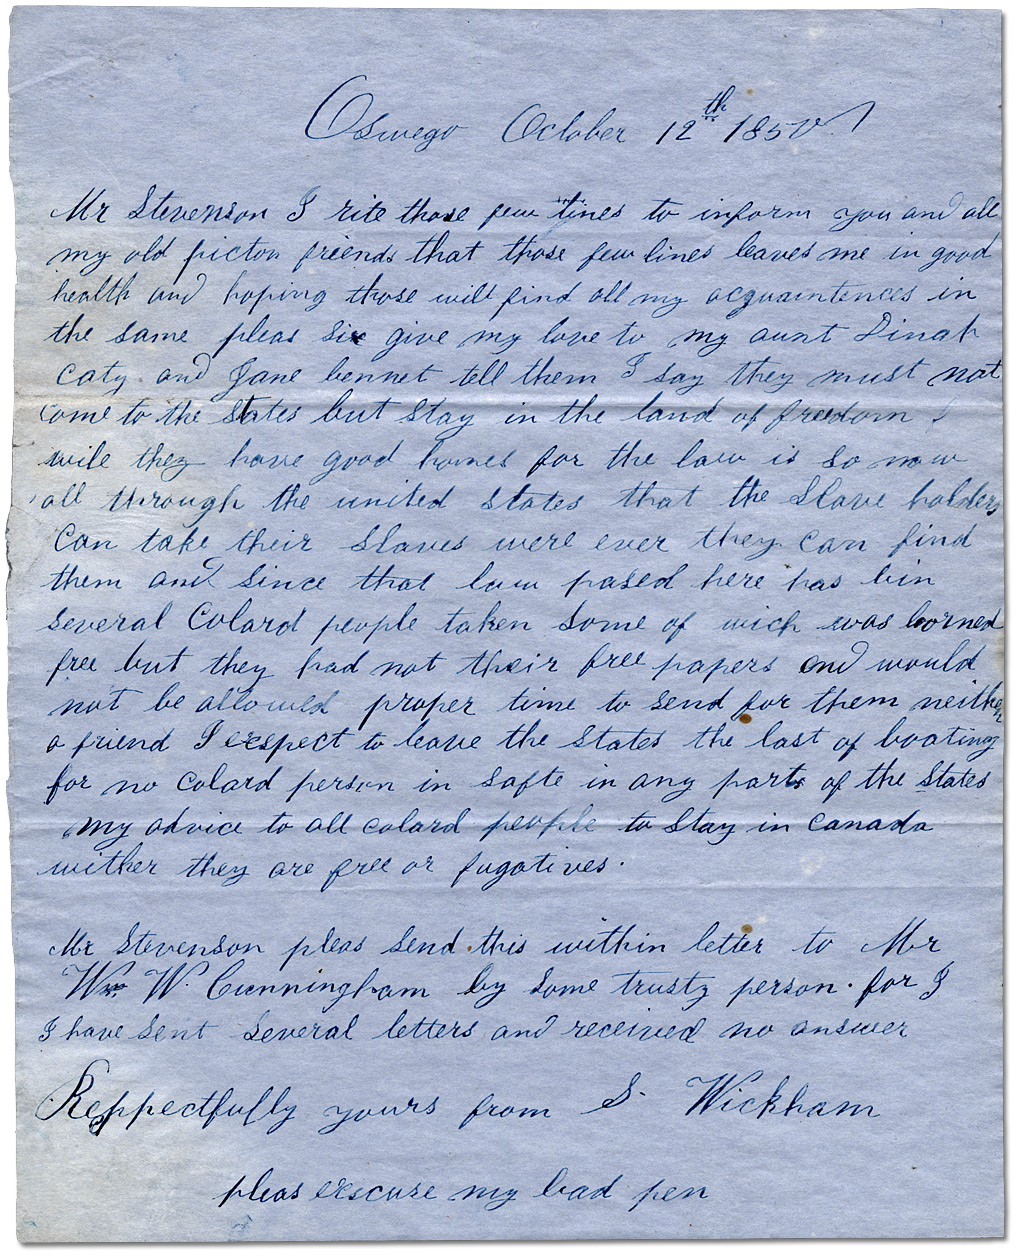 Lettre datée du 12 octobre 1850 dans laquelle S. Wickam met en garde contre des chasseurs d’esclaves aux États-Unis